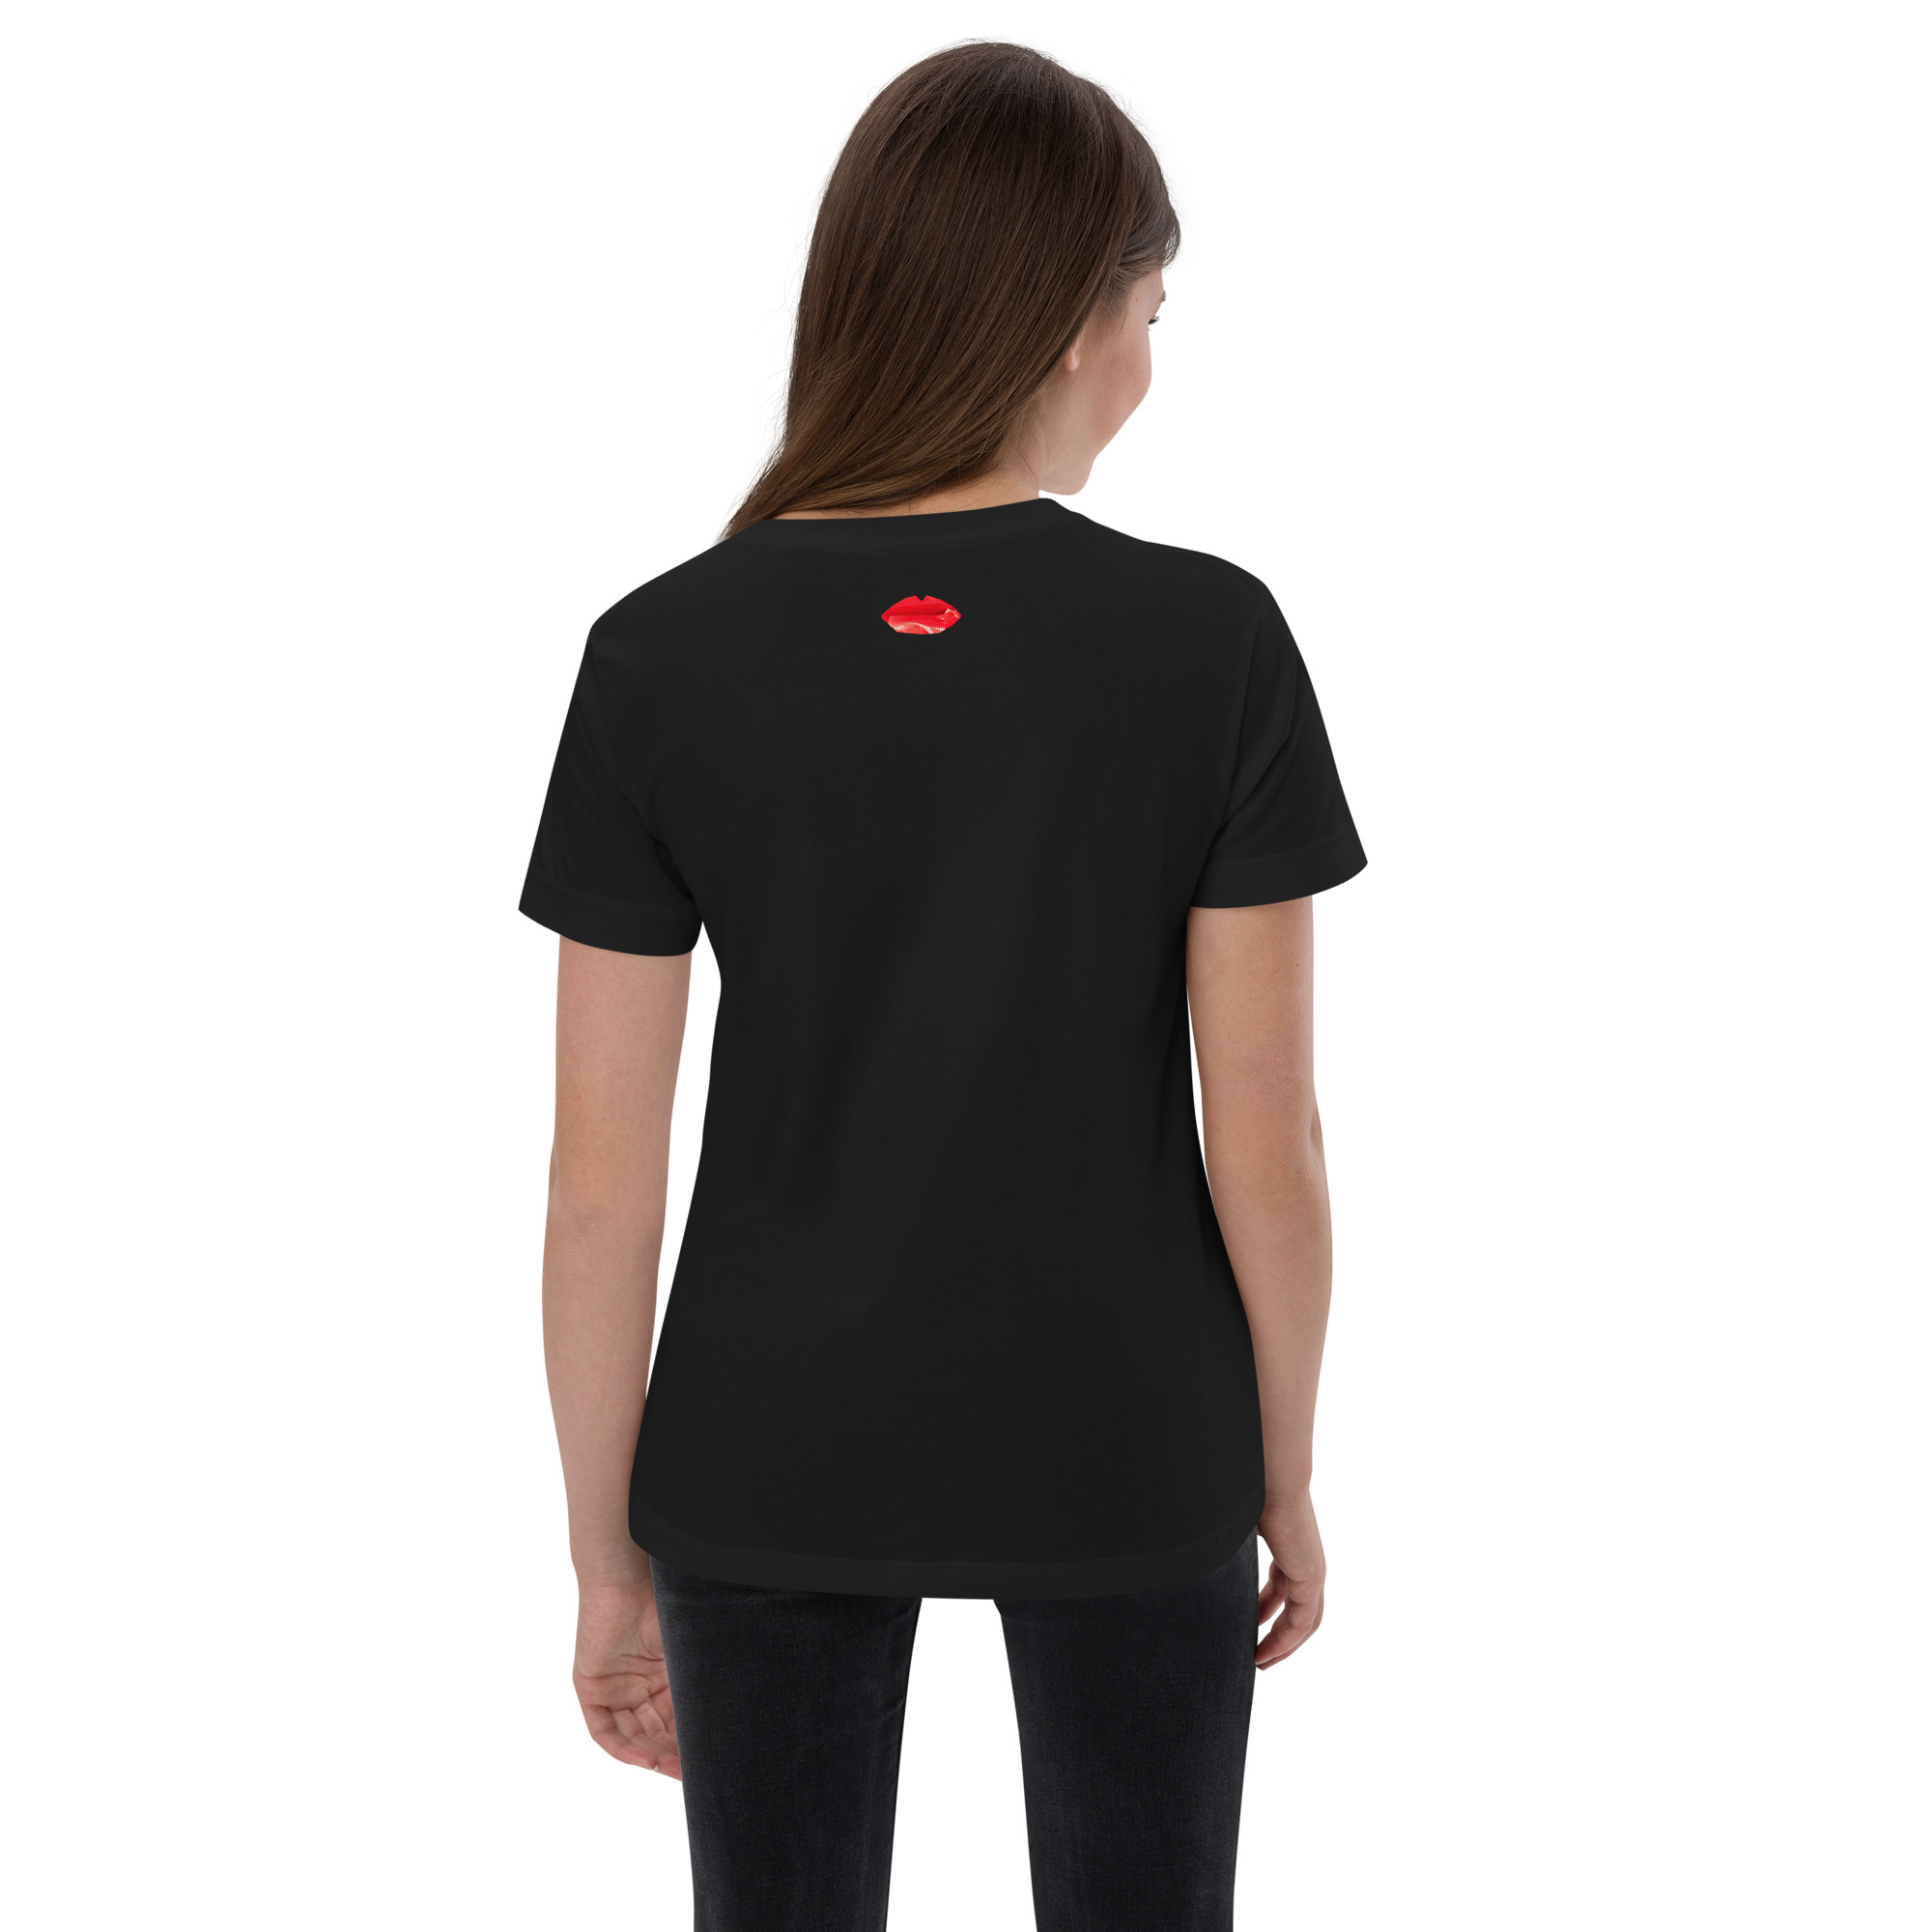 youth-jersey-t-shirt-black-back-6384cb2a1d607.jpg